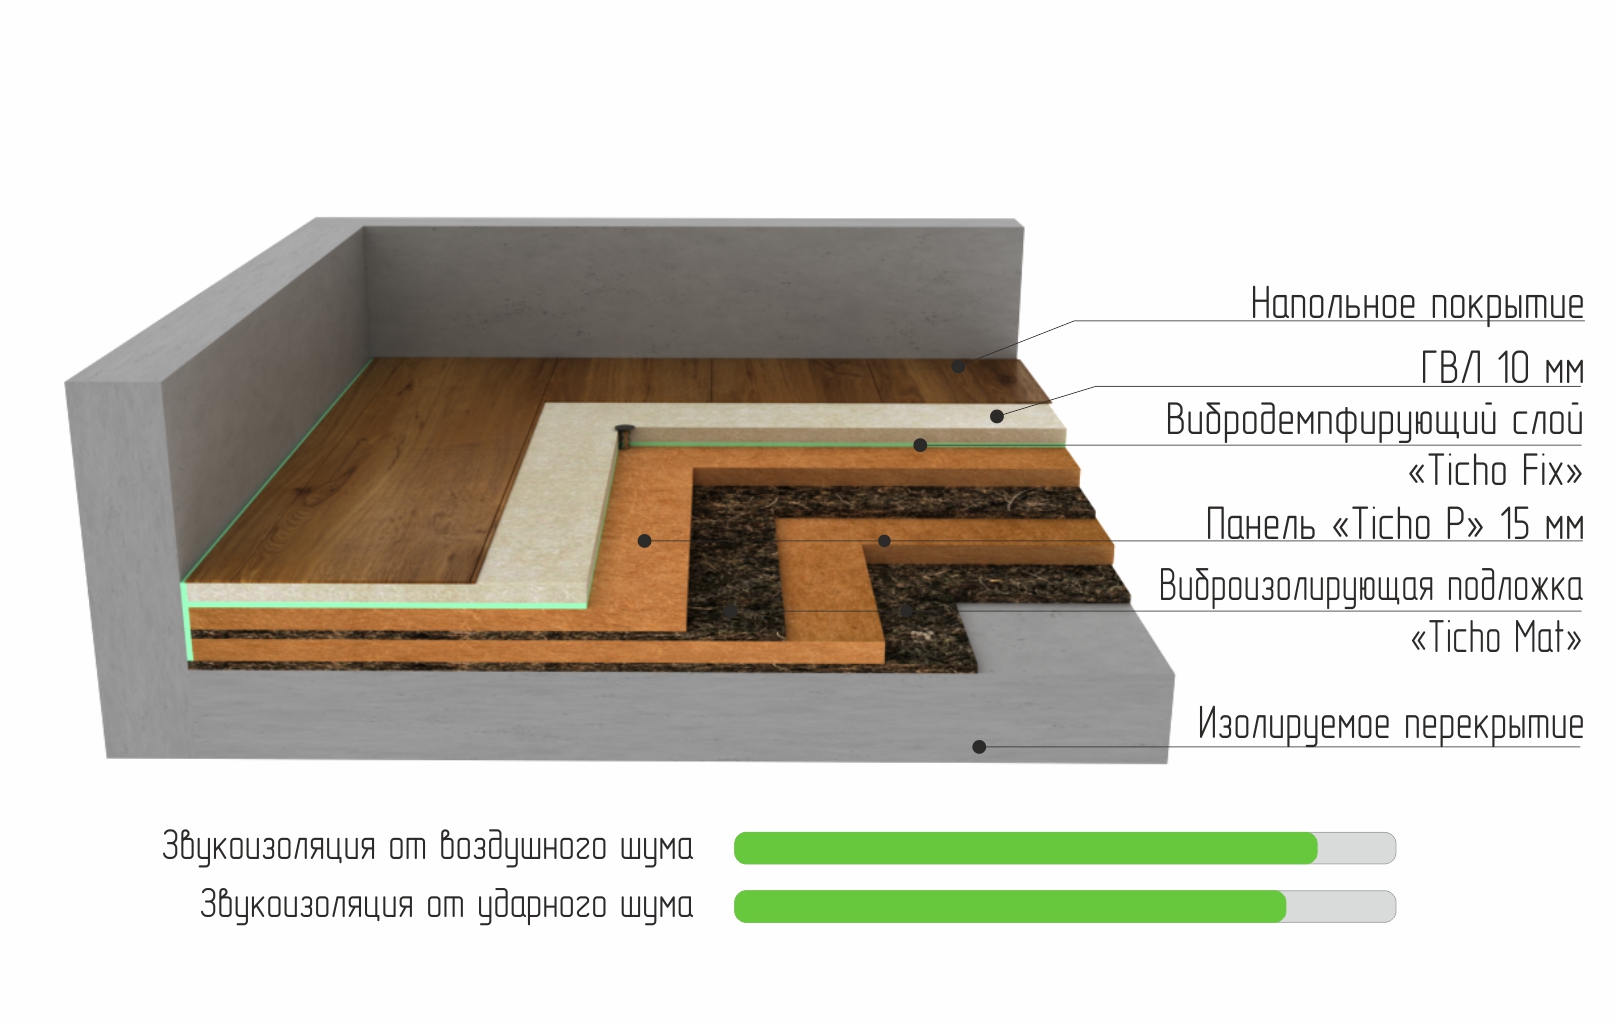 Шумоизоляция пола в квартире - выбор материала и правила монтажа - строительство и ремонт